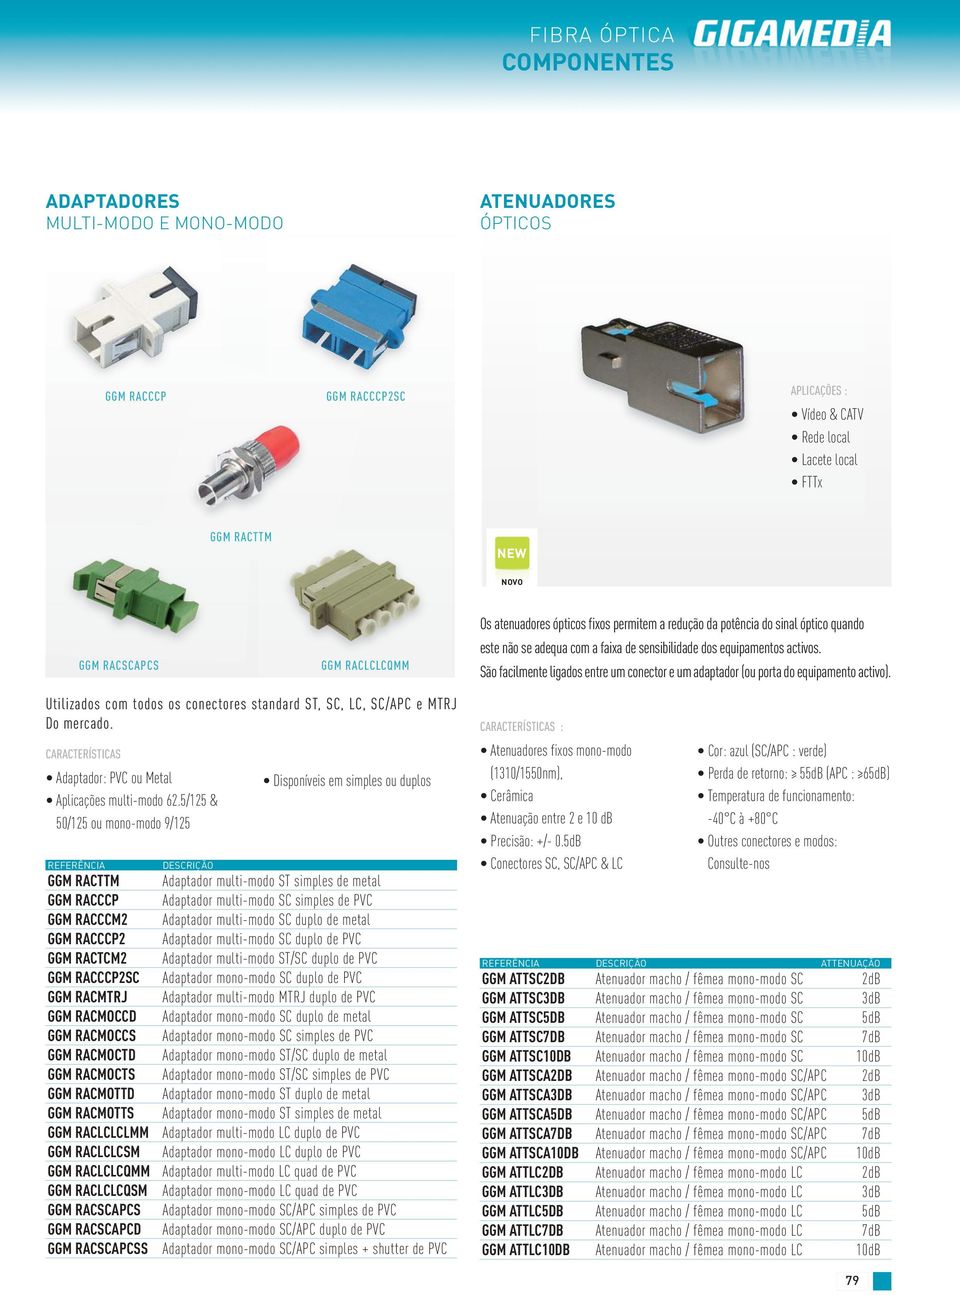 São facilmente ligados entre um conector e um adaptador (ou porta do equipamento activo). Utilizados com todos os conectores standard ST, SC, LC, SC/APC e MTRJ Do mercado.